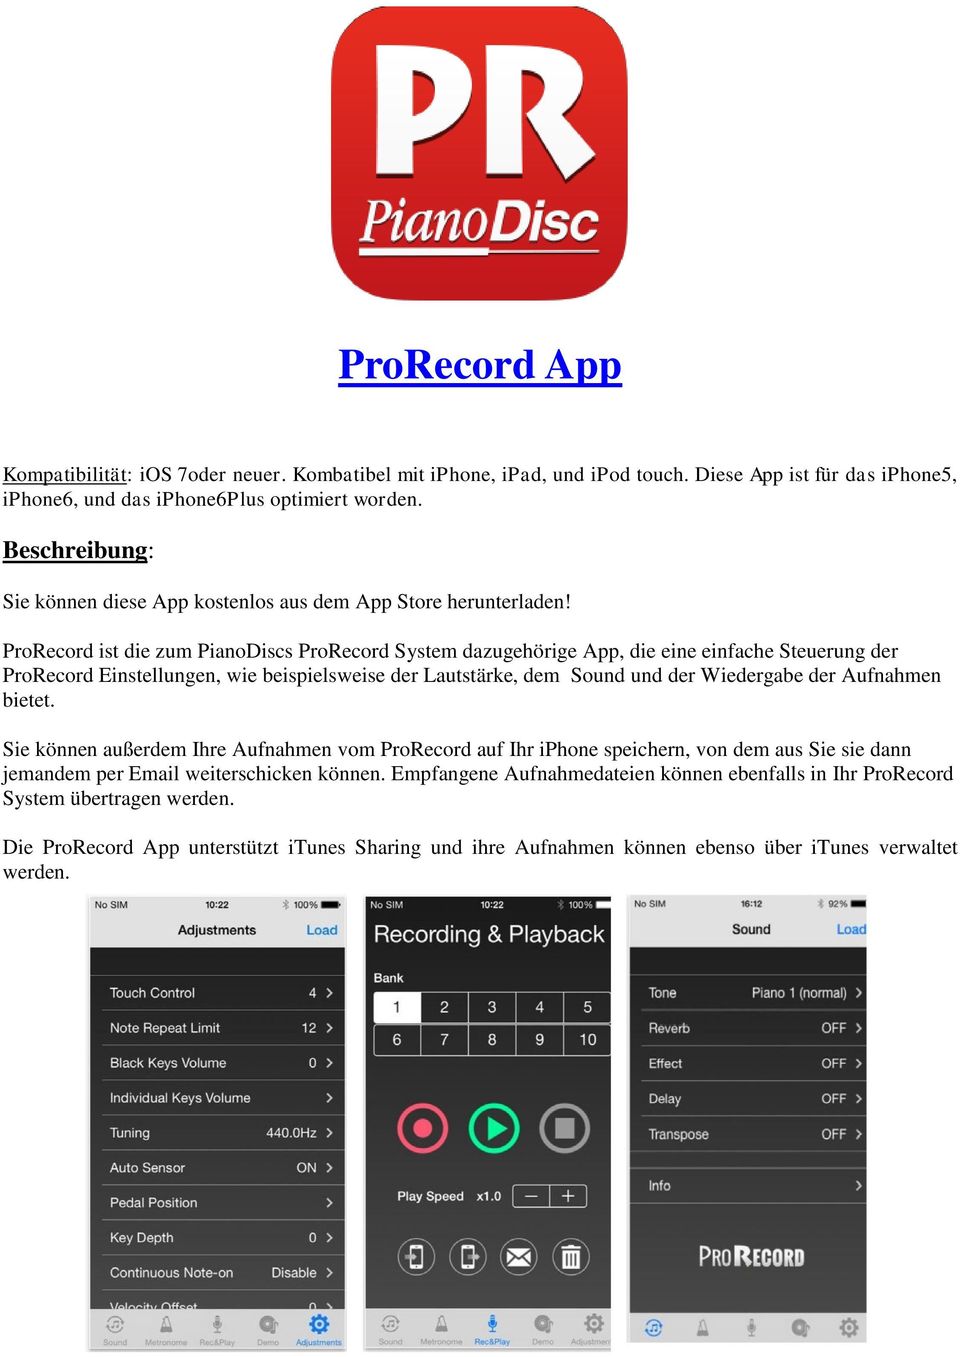 ProRecord ist die zum PianoDiscs ProRecord System dazugehörige App, die eine einfache Steuerung der ProRecord Einstellungen, wie beispielsweise der Lautstärke, dem Sound und der Wiedergabe der